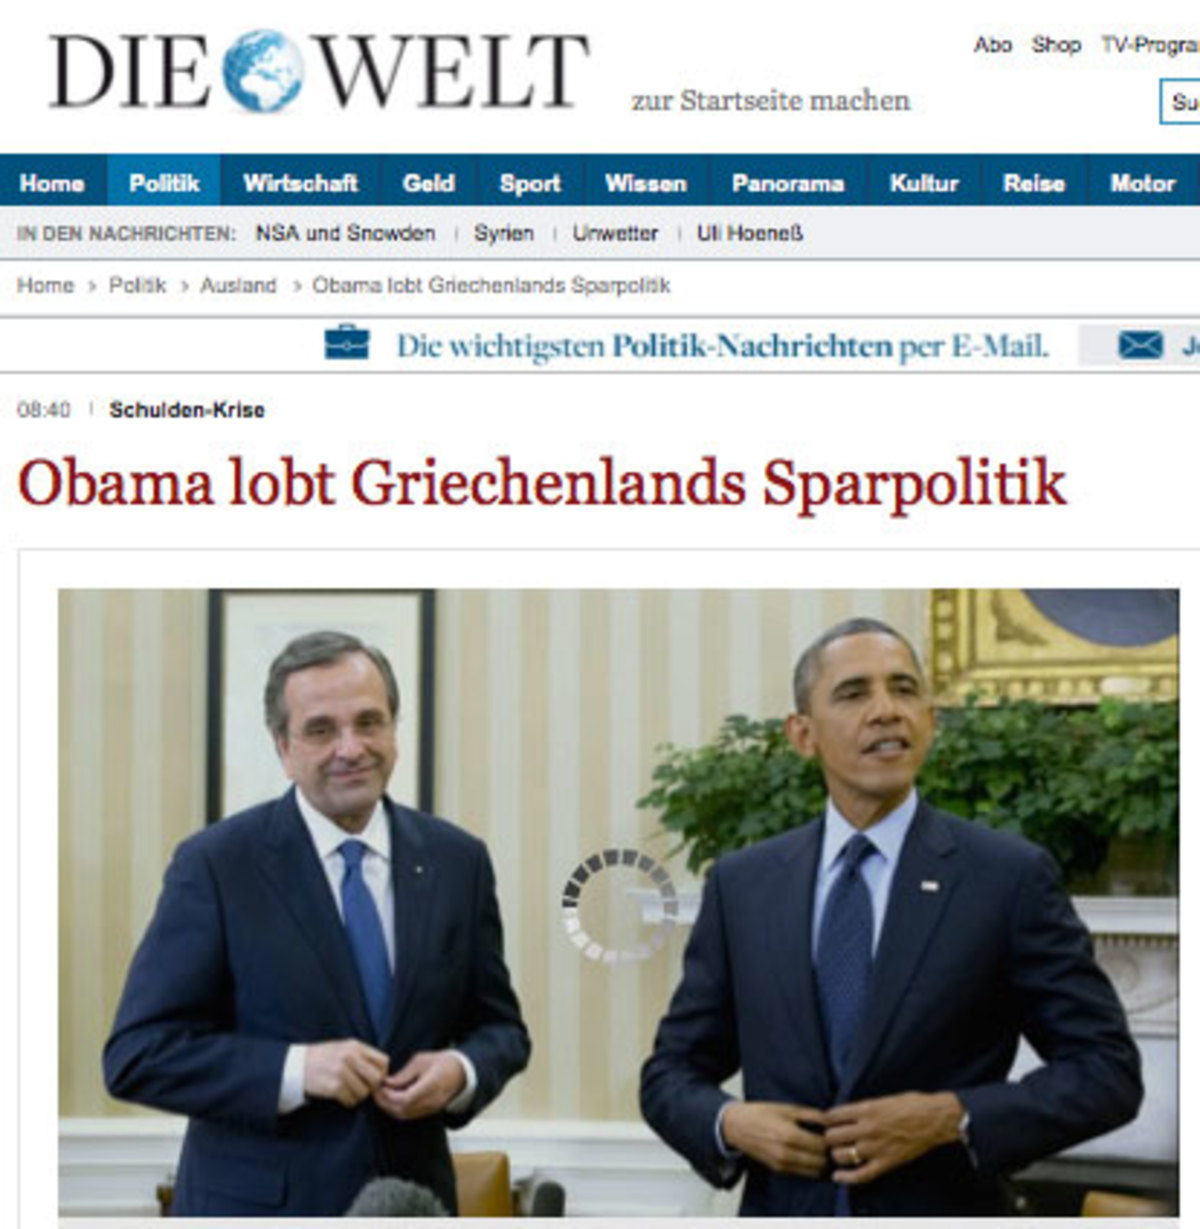 Γερμανικός Τύπος: Δεν άκουσε ευχάριστα η Γερμανία όσα είπε ο Ομπάμα